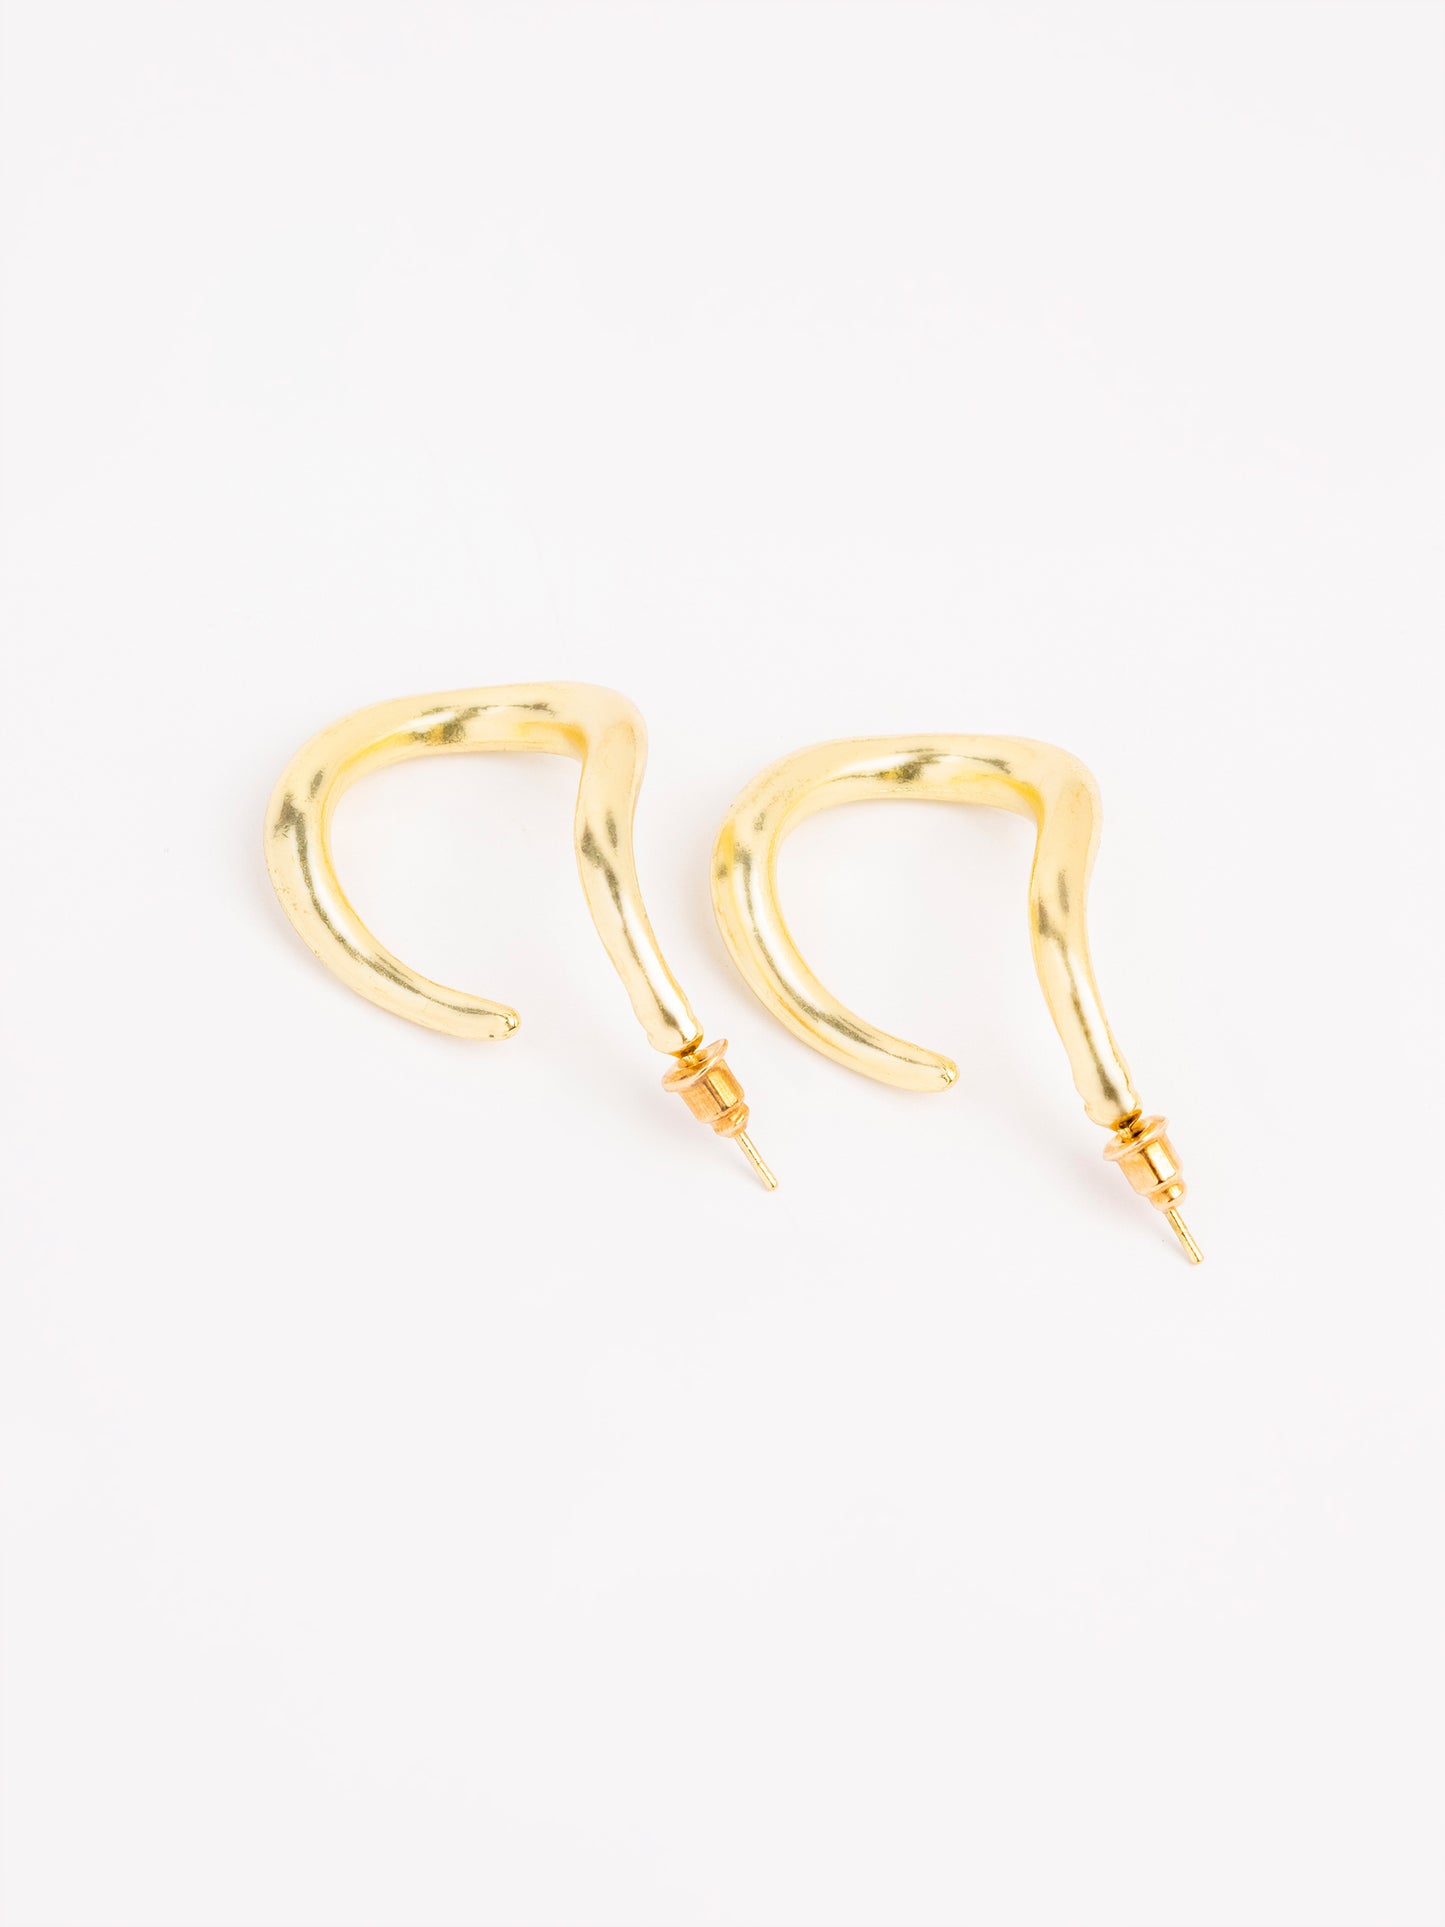 Minimal Gold Earings    I6396ER-FRE-GDN